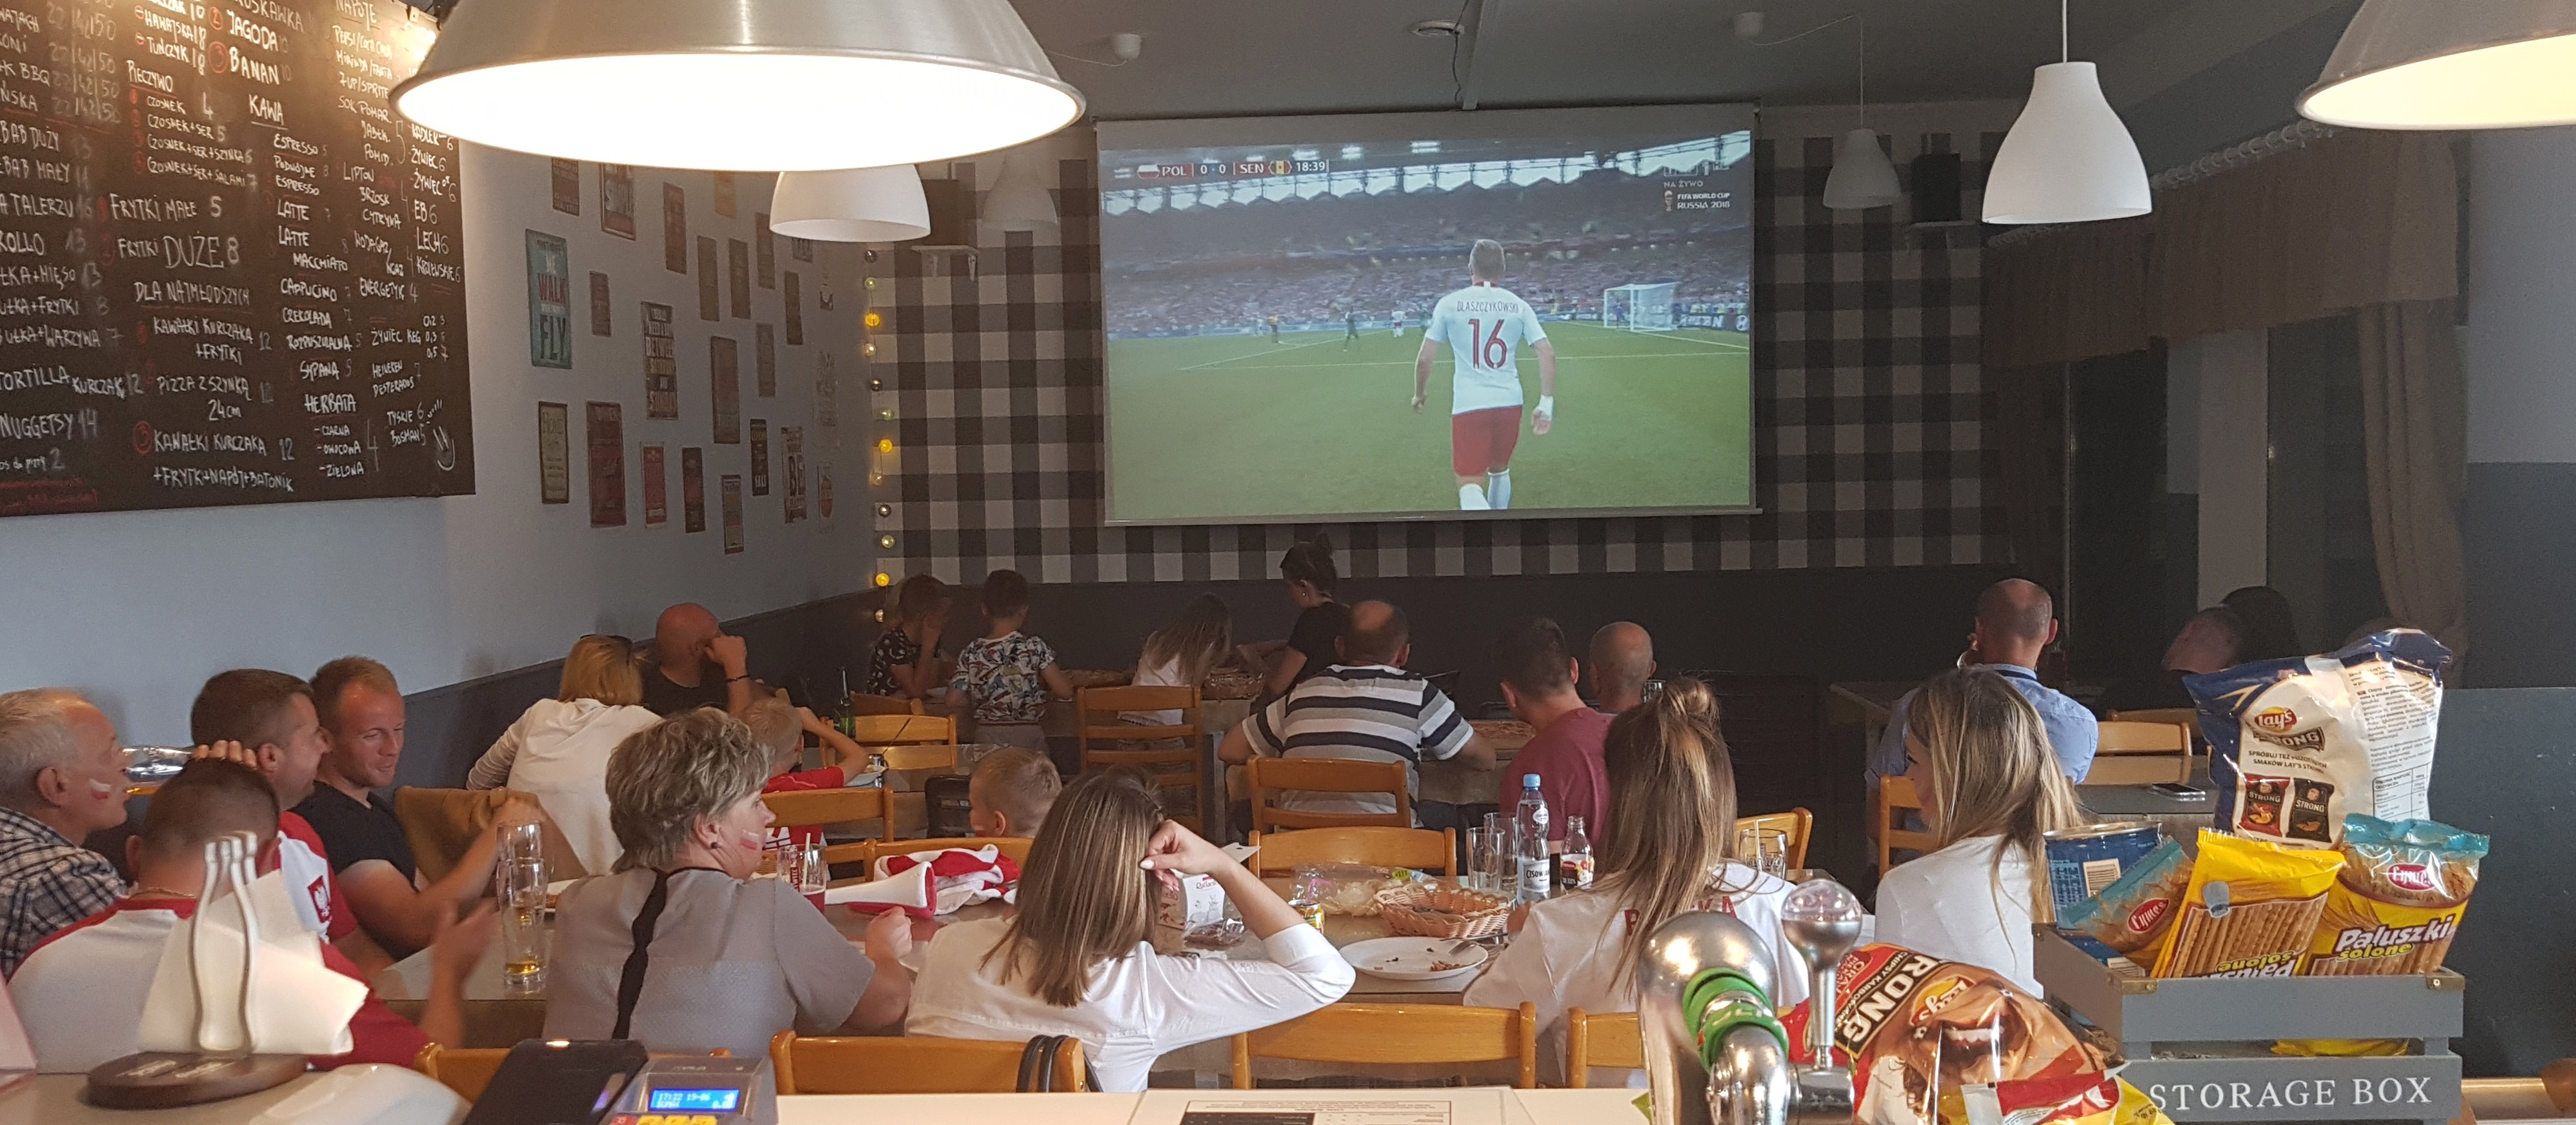 Zdjęcie przedstawia wnętrze pizzerii, w której siedzi ponad 20 osób, w tym małe dzieci. 
            Wszyscy oglądają mecz reprezentacji Polski na ponad stucalowym ekranie.